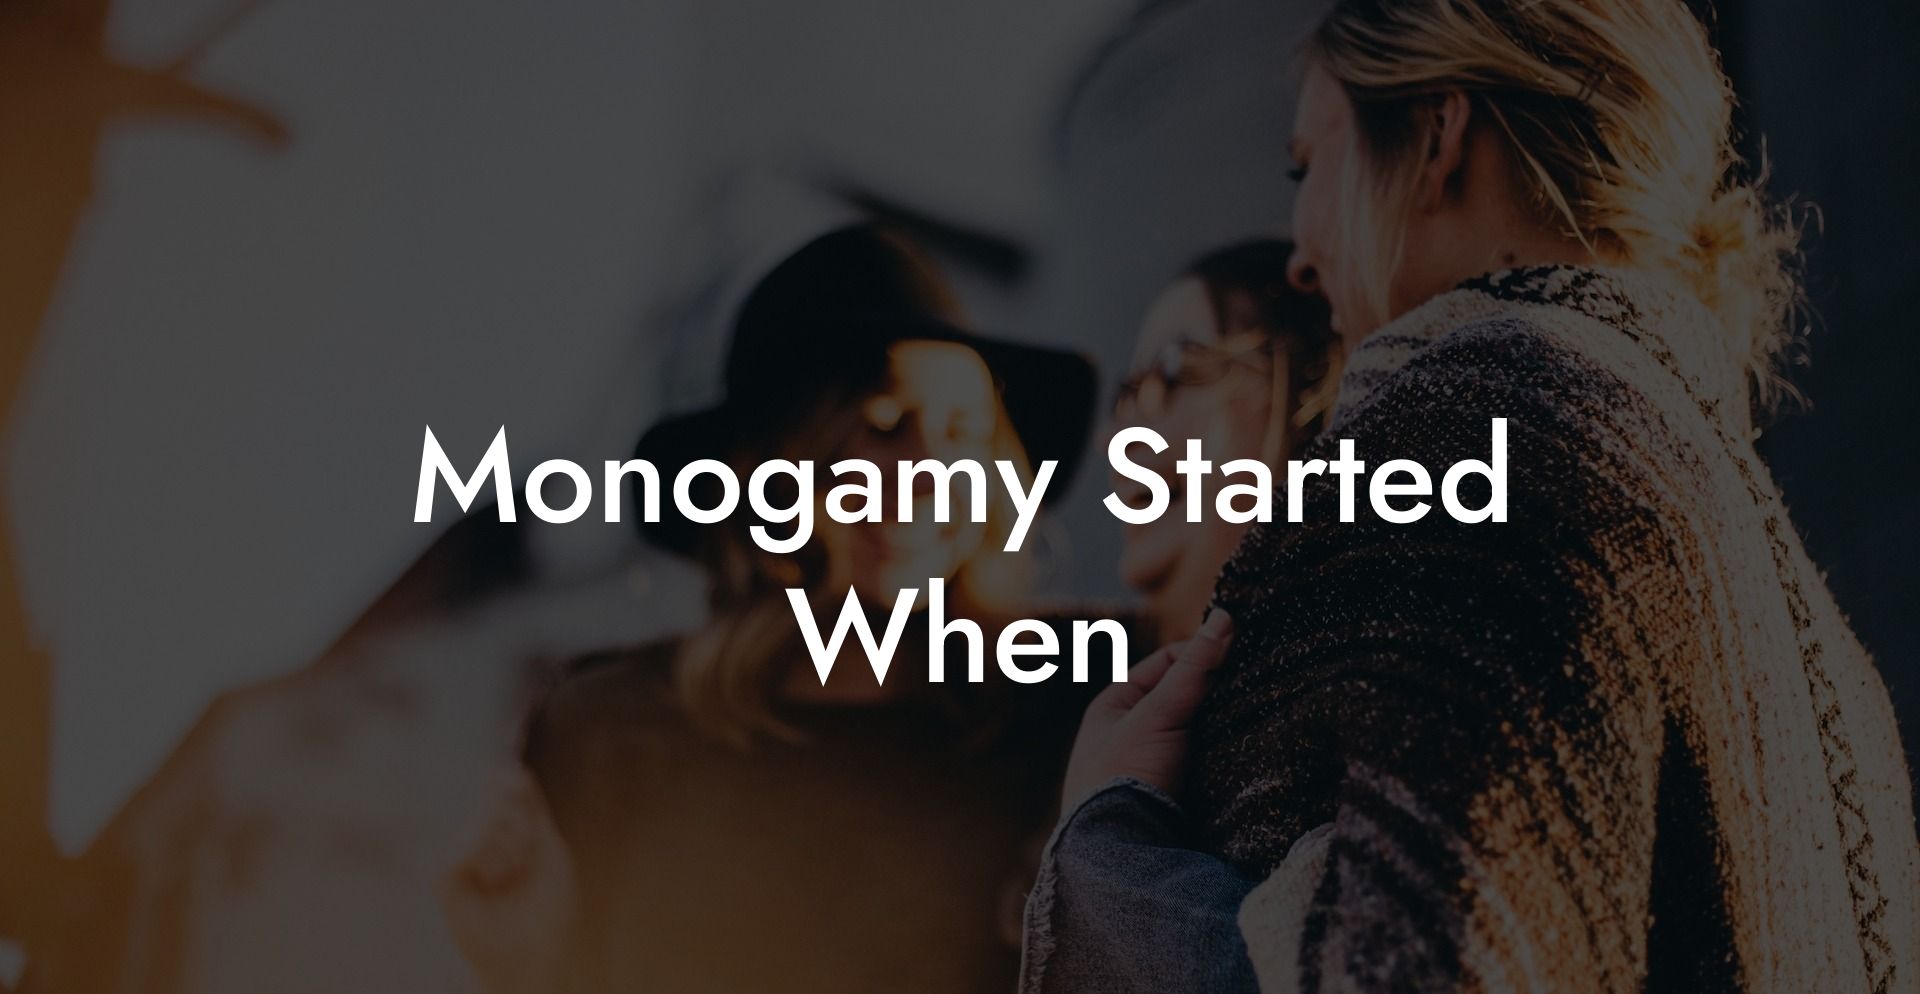 Monogamy Started When